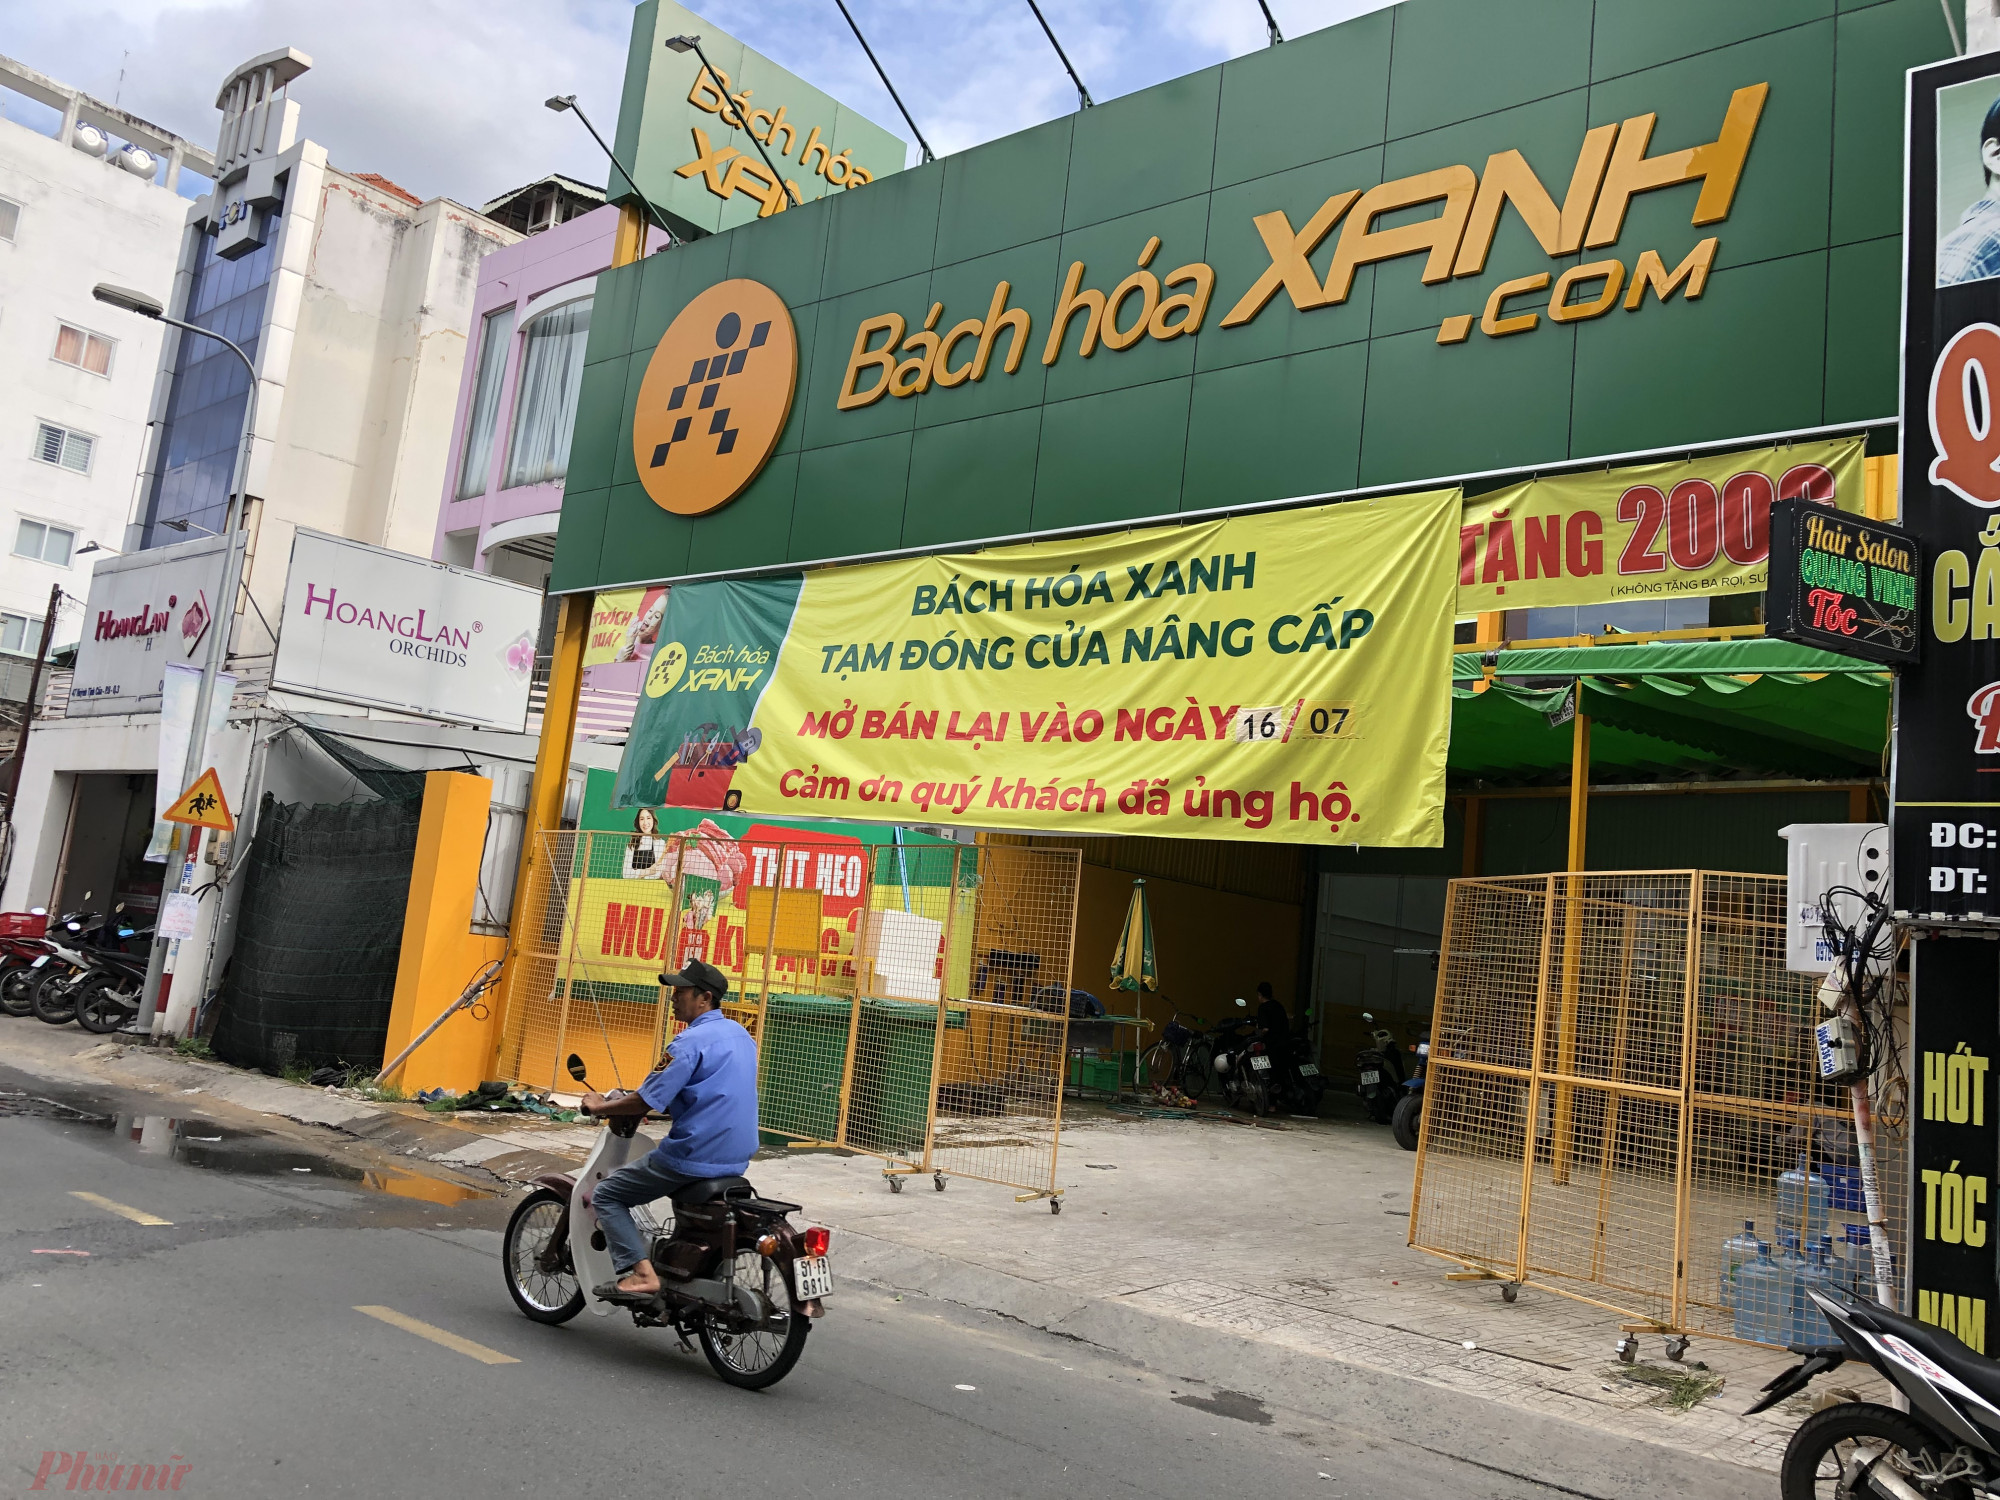 Tương tự, cửa hàng Bách Hoá Xanh trên đường Huỳnh Tịnh Của (quận 3) cũng treo bảng 